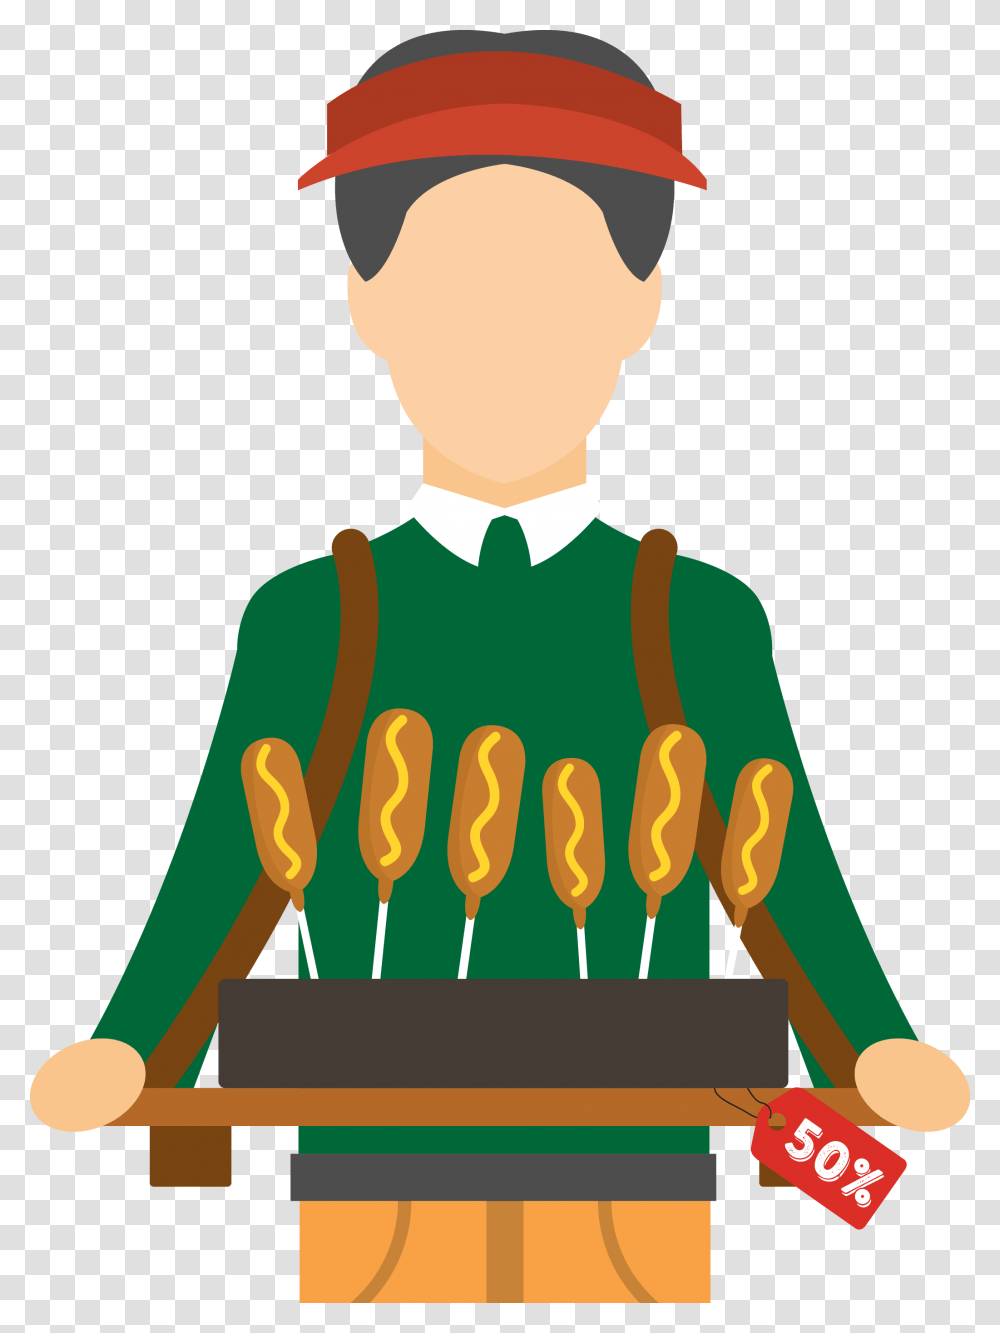 Hot Dog Cartoon Hot Dog, Food, Person, Human, Bbq Transparent Png